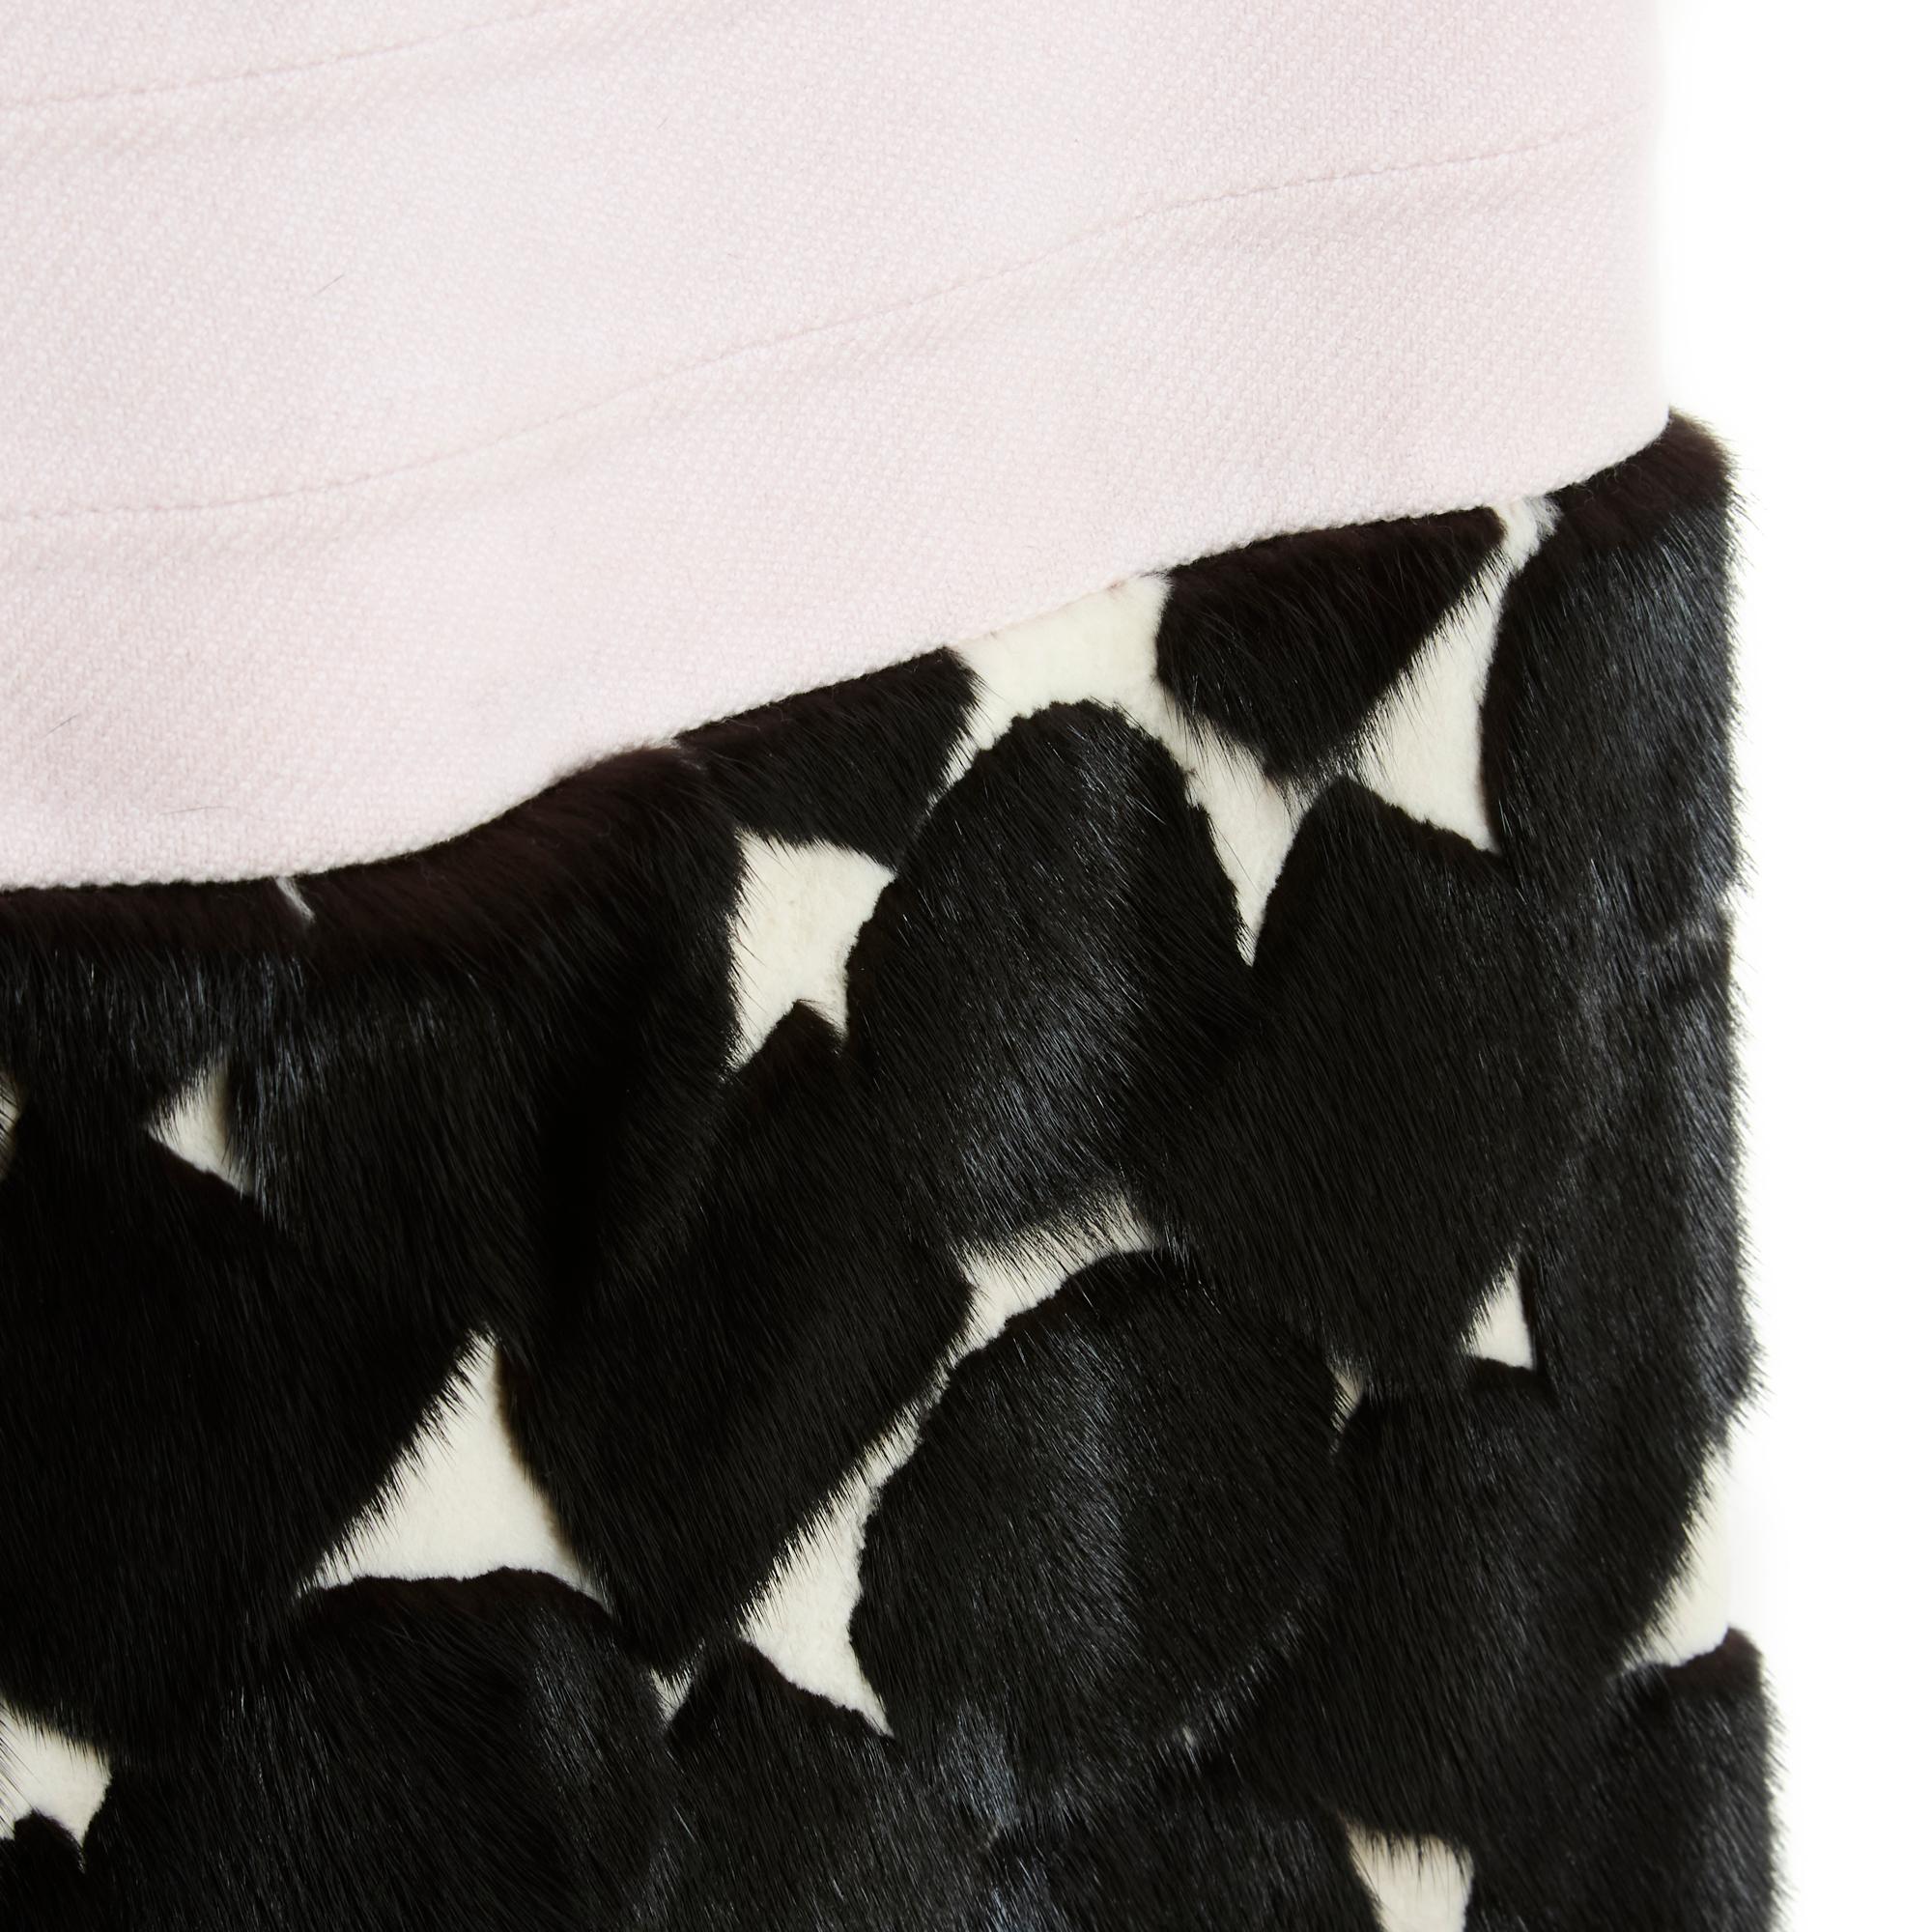 Louis Vuitton Kleid, wahrscheinlich von Marc Jacobs, aus dickem blassrosa Wollstoff, Rundhalsausschnitt mit Ausschnitt auf der oberen Brust, ärmellos, unten verziert mit einem Polka-Dot-Muster aus langem schwarzem Nerz auf ecrufarbenem rasiertem